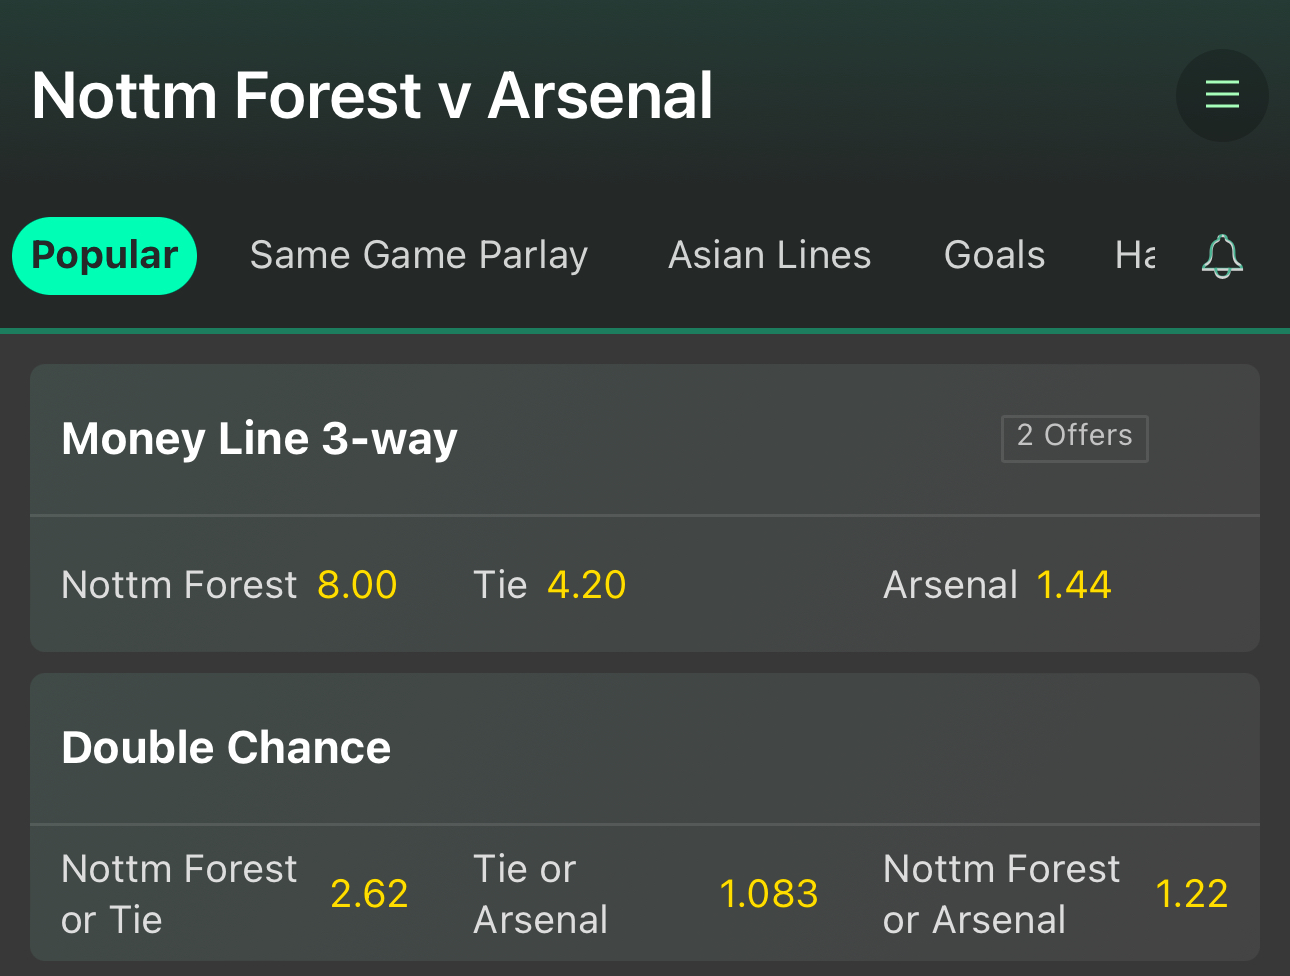 Nottingham Forest vs Arsenal moneyline bet at bet365